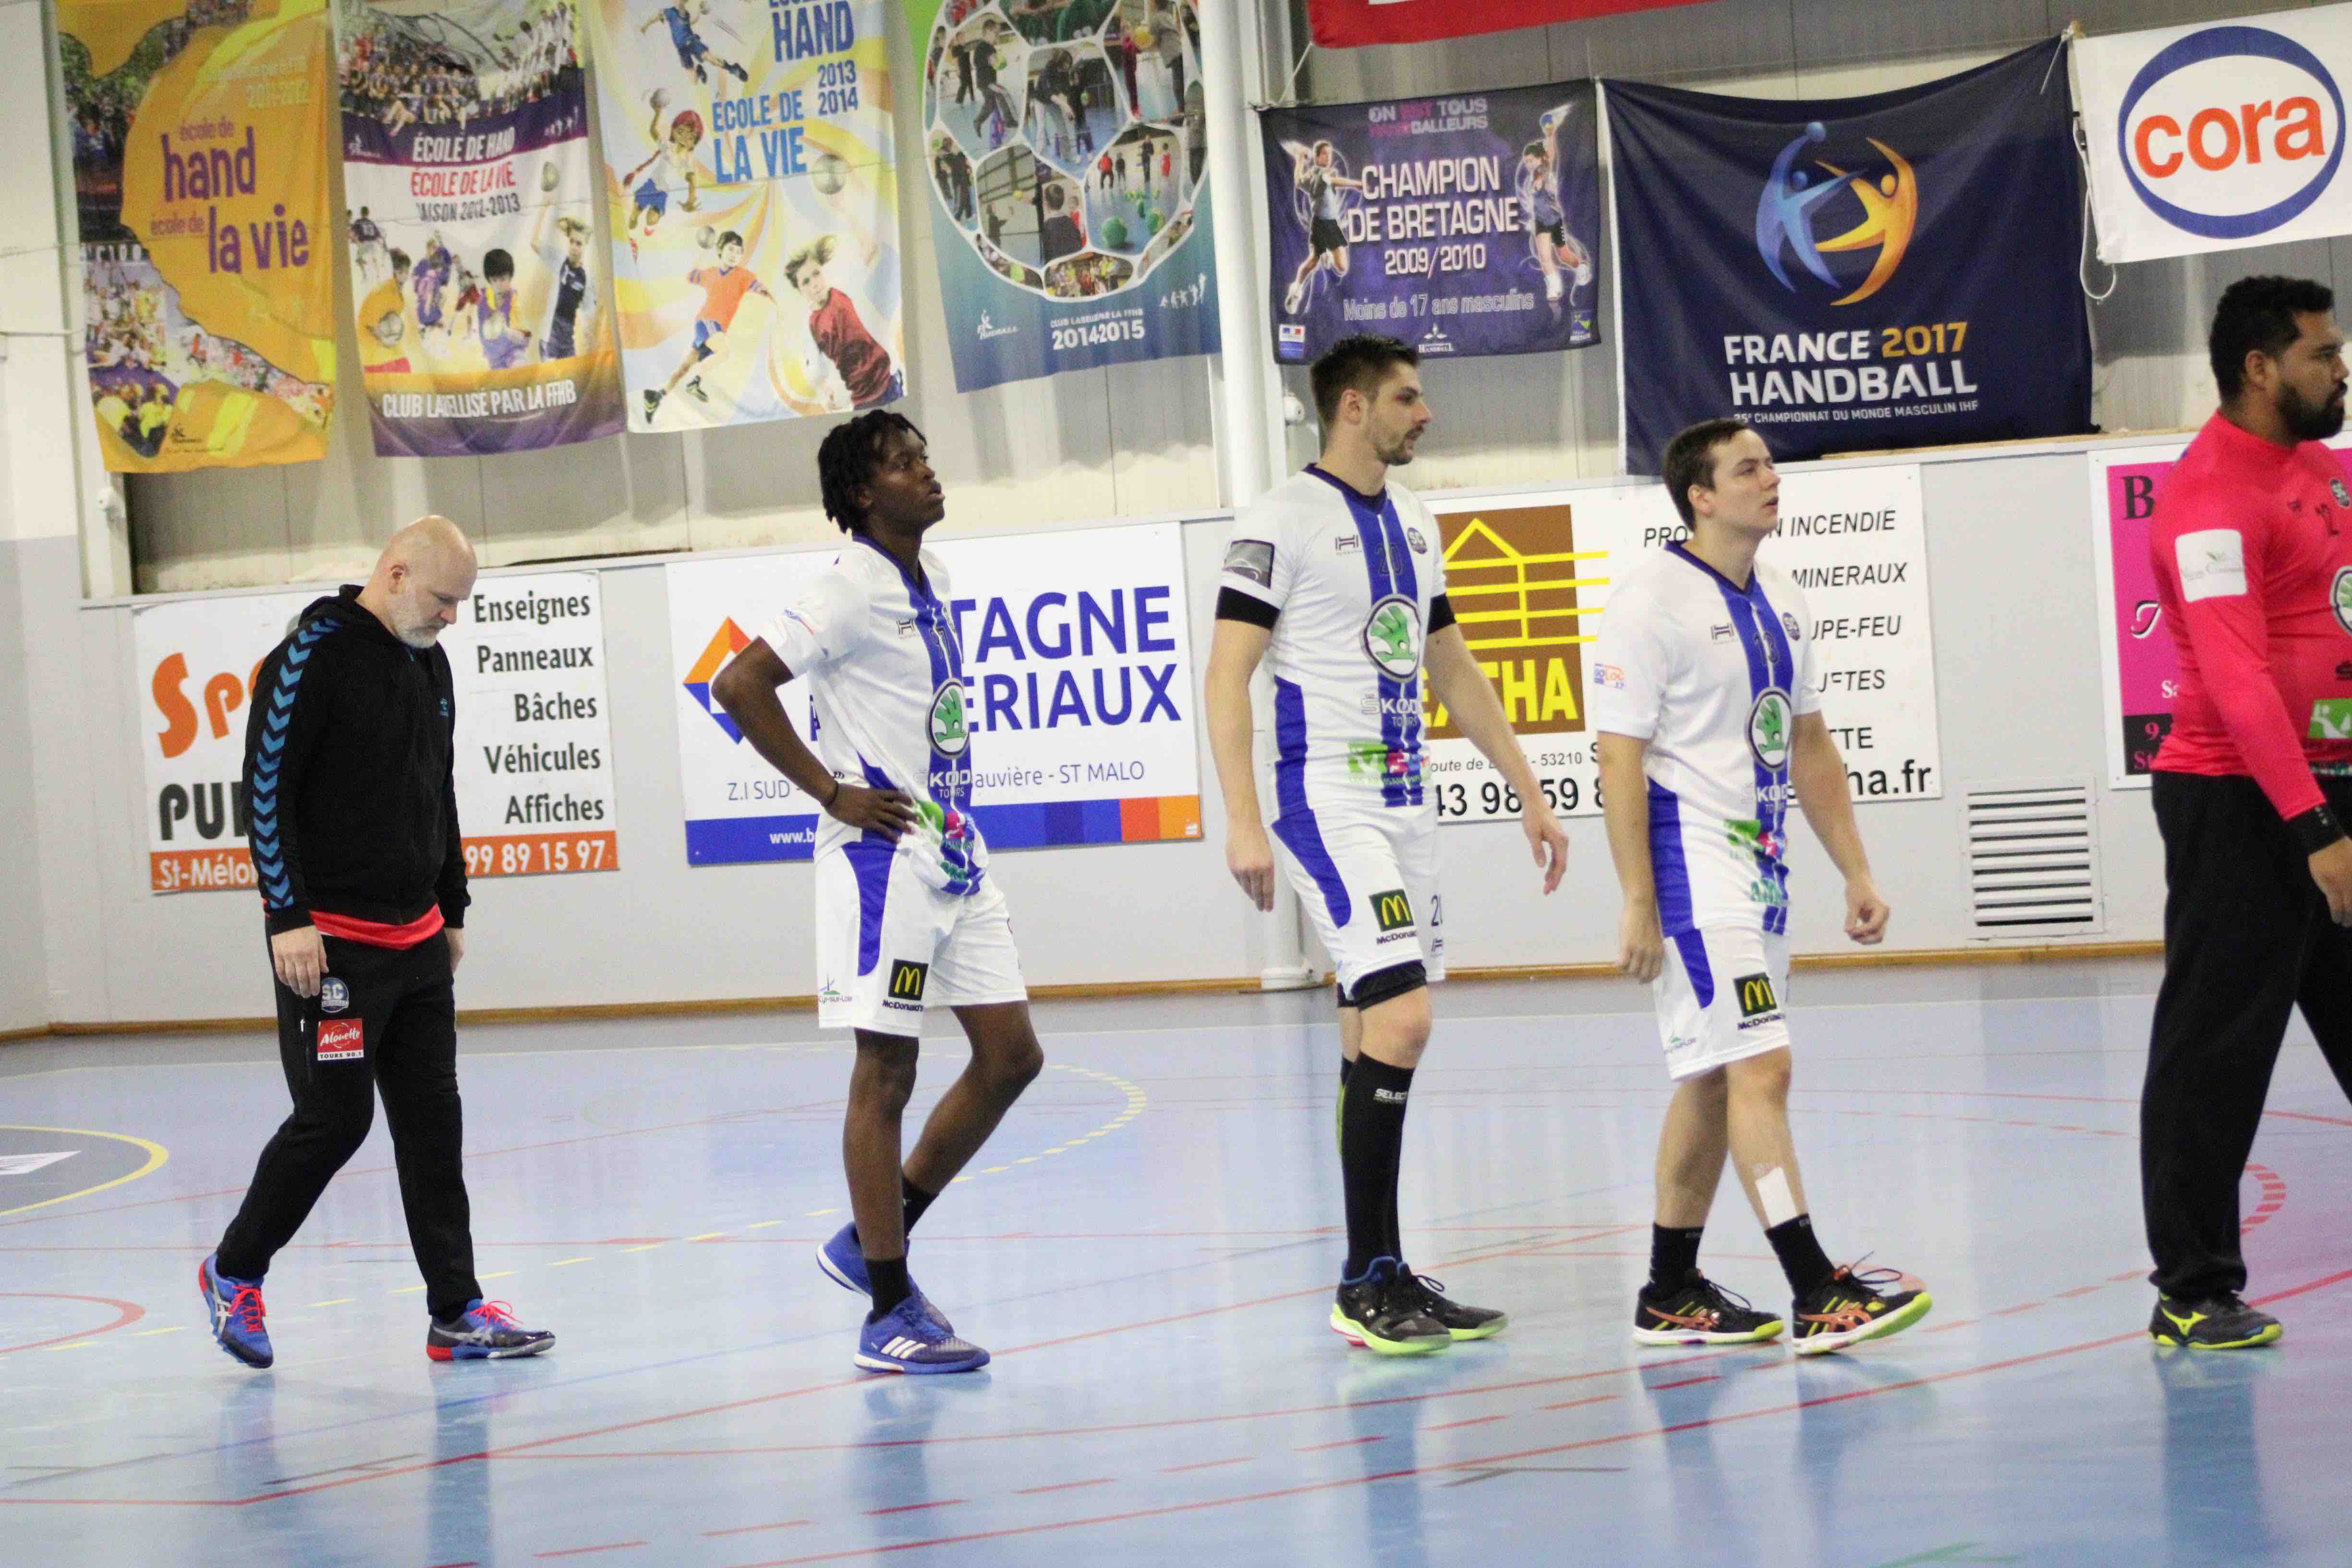 2019nov23 CJF hb _ SC handball (5)